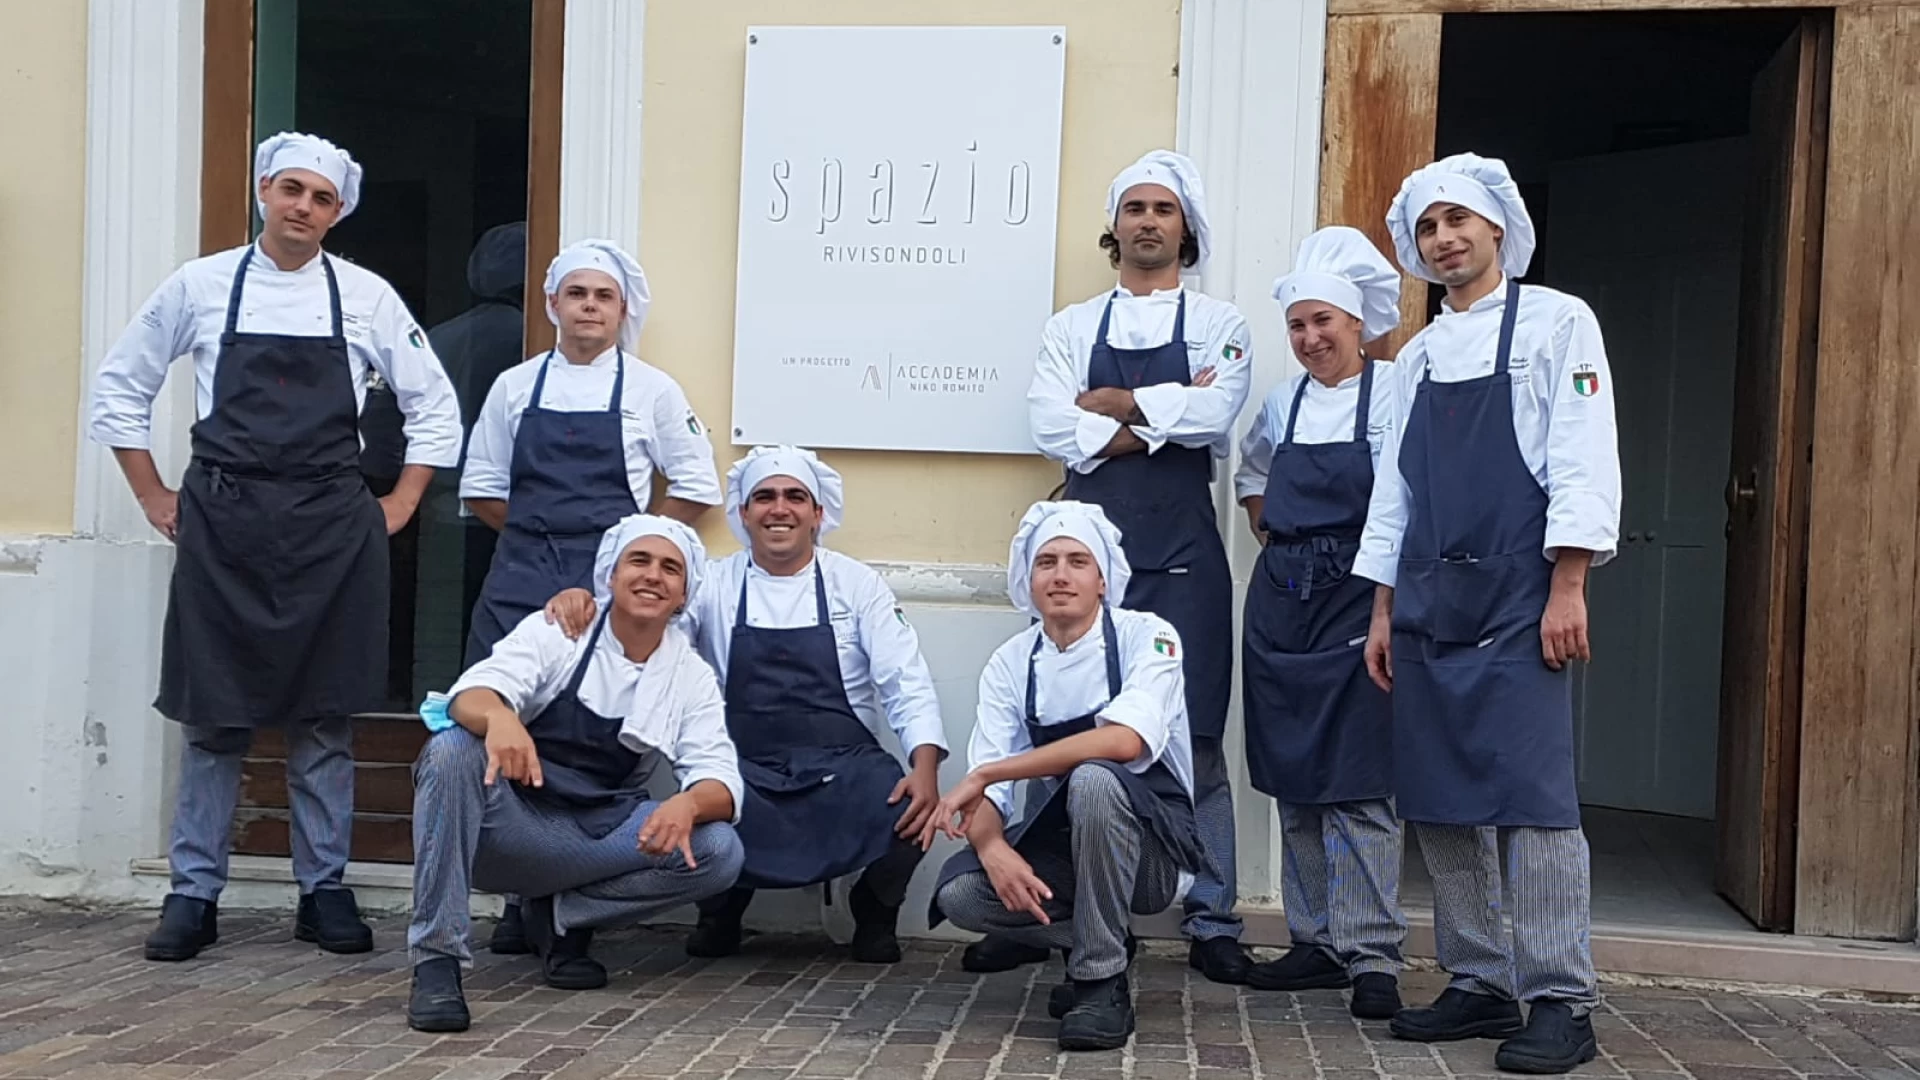 Spazio Rivisondoli apre con gli allievi del 17°esimo corso. Da sabato 30 luglio al via la sessione estiva del ristorante didattico dell’Accademia Niko Romito.